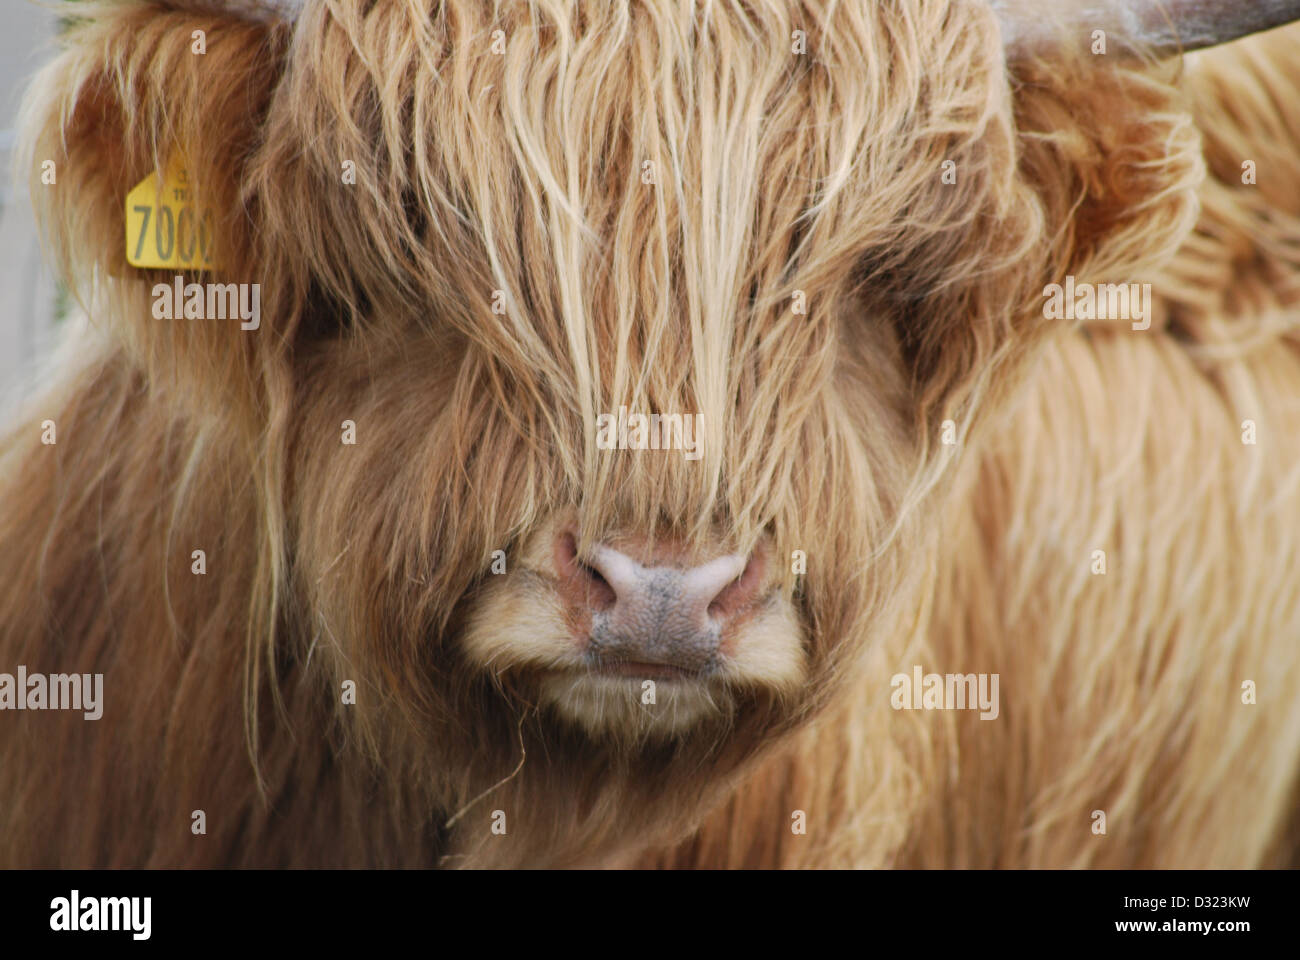 Une vache highland avec orange ou gingembre cheveux longs poils à un zoo ou à la ferme avec des cornes près de son visage et tagged ear Banque D'Images